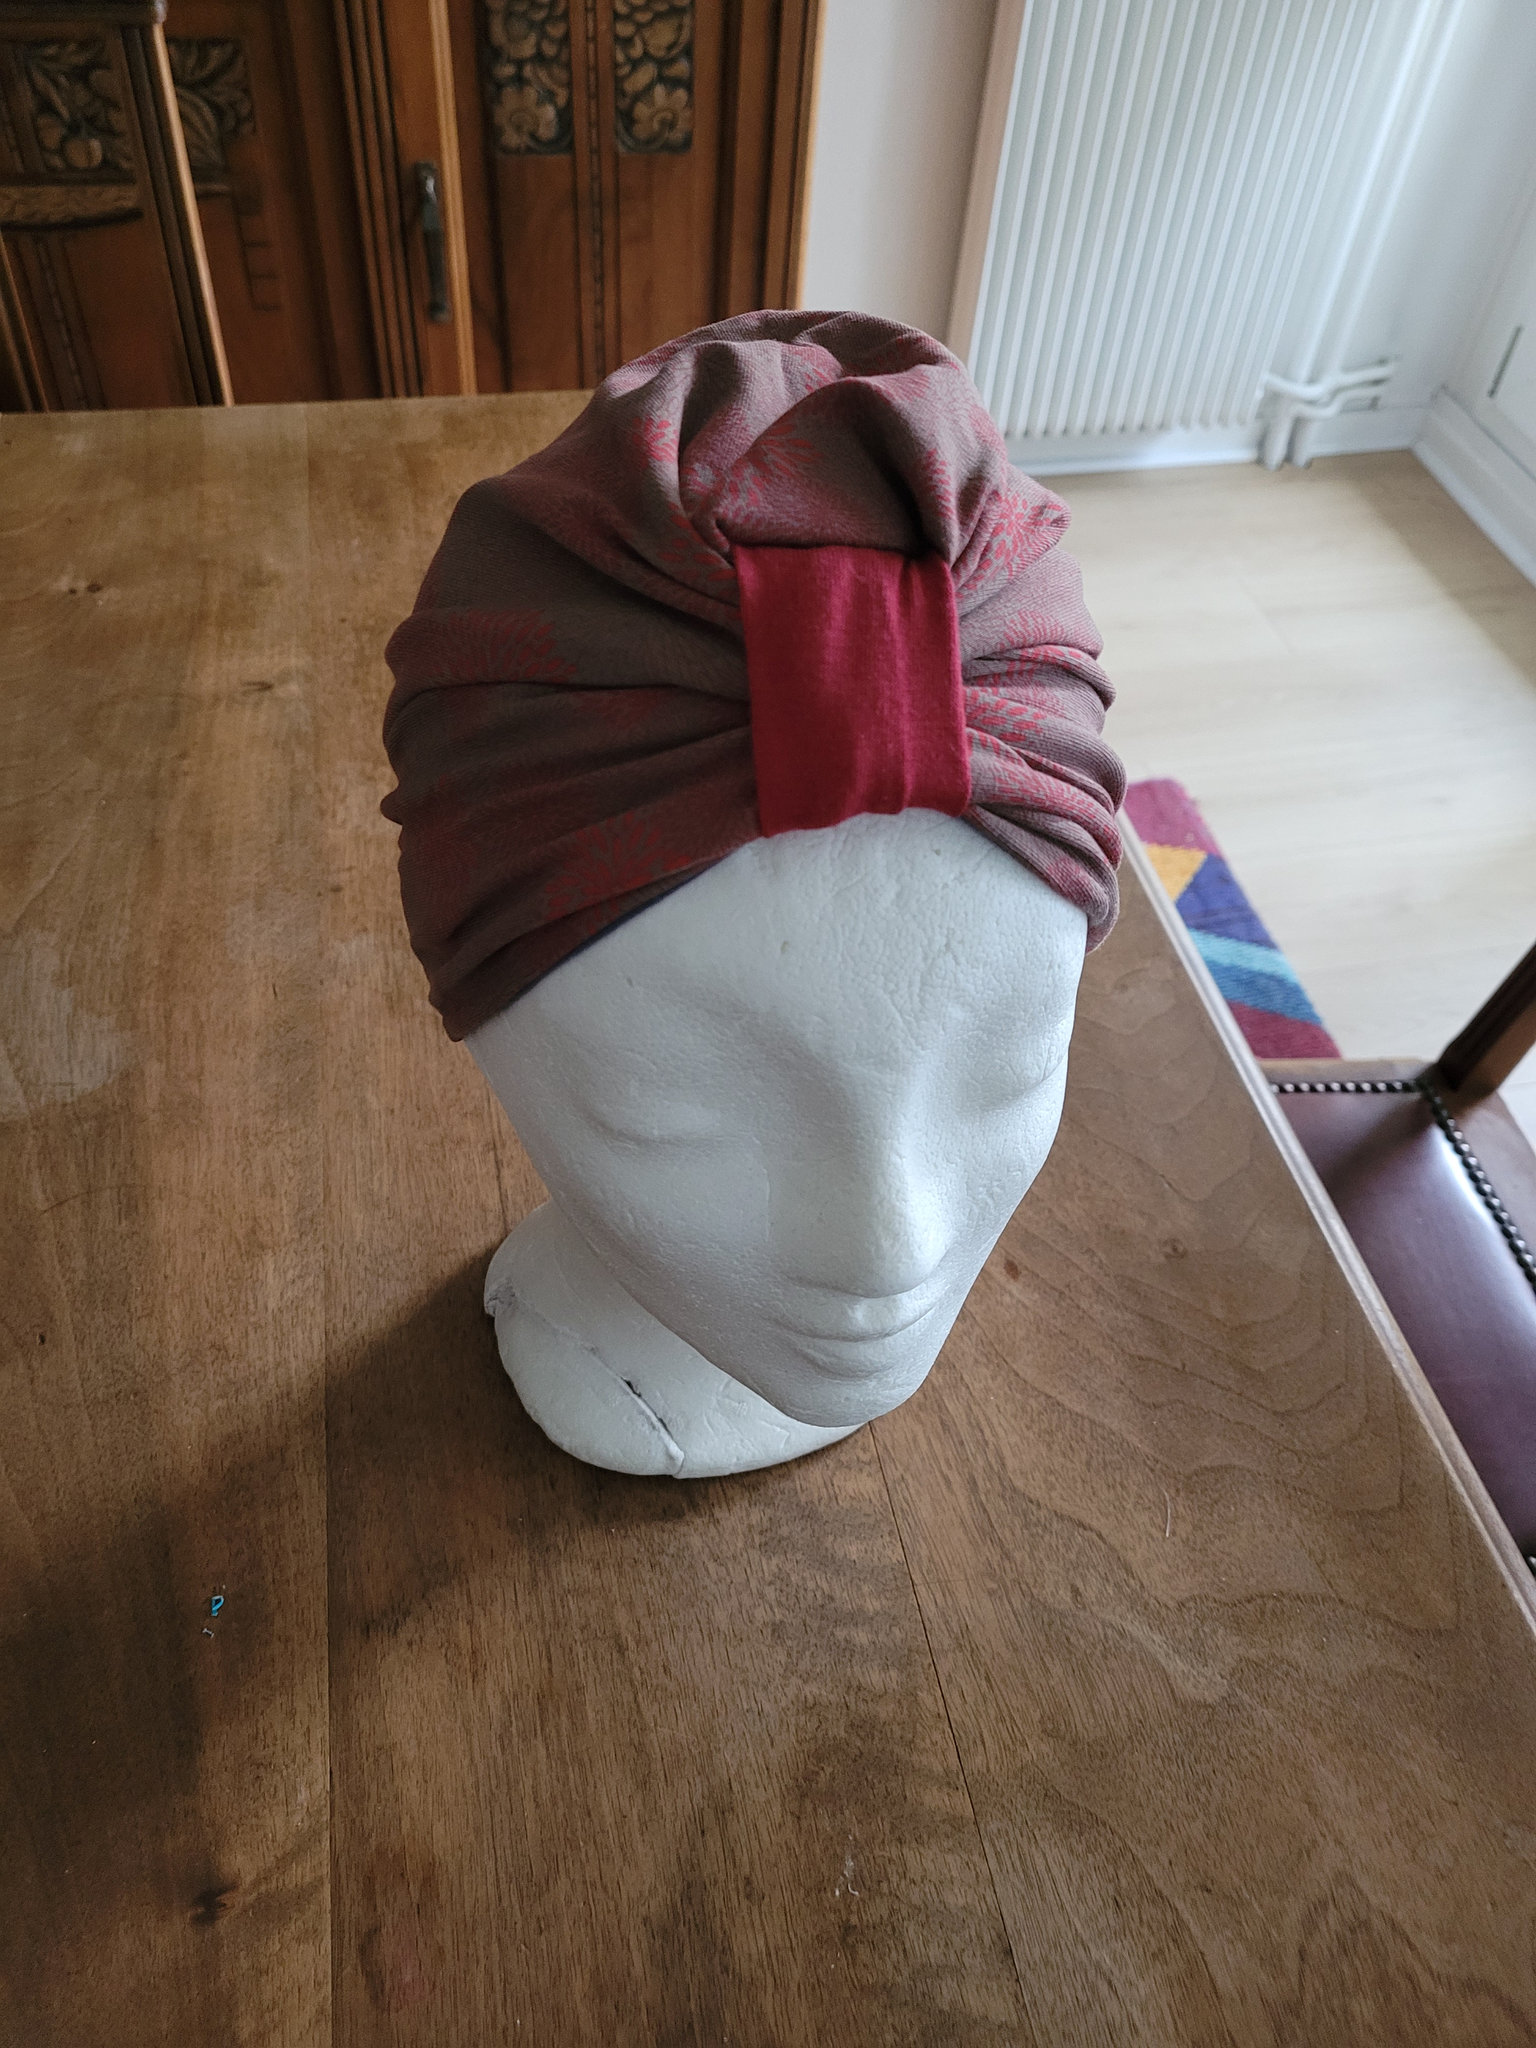 Octobre rose : le tuto du turban  Tuto couture bonnet, Octobre rose, Turban